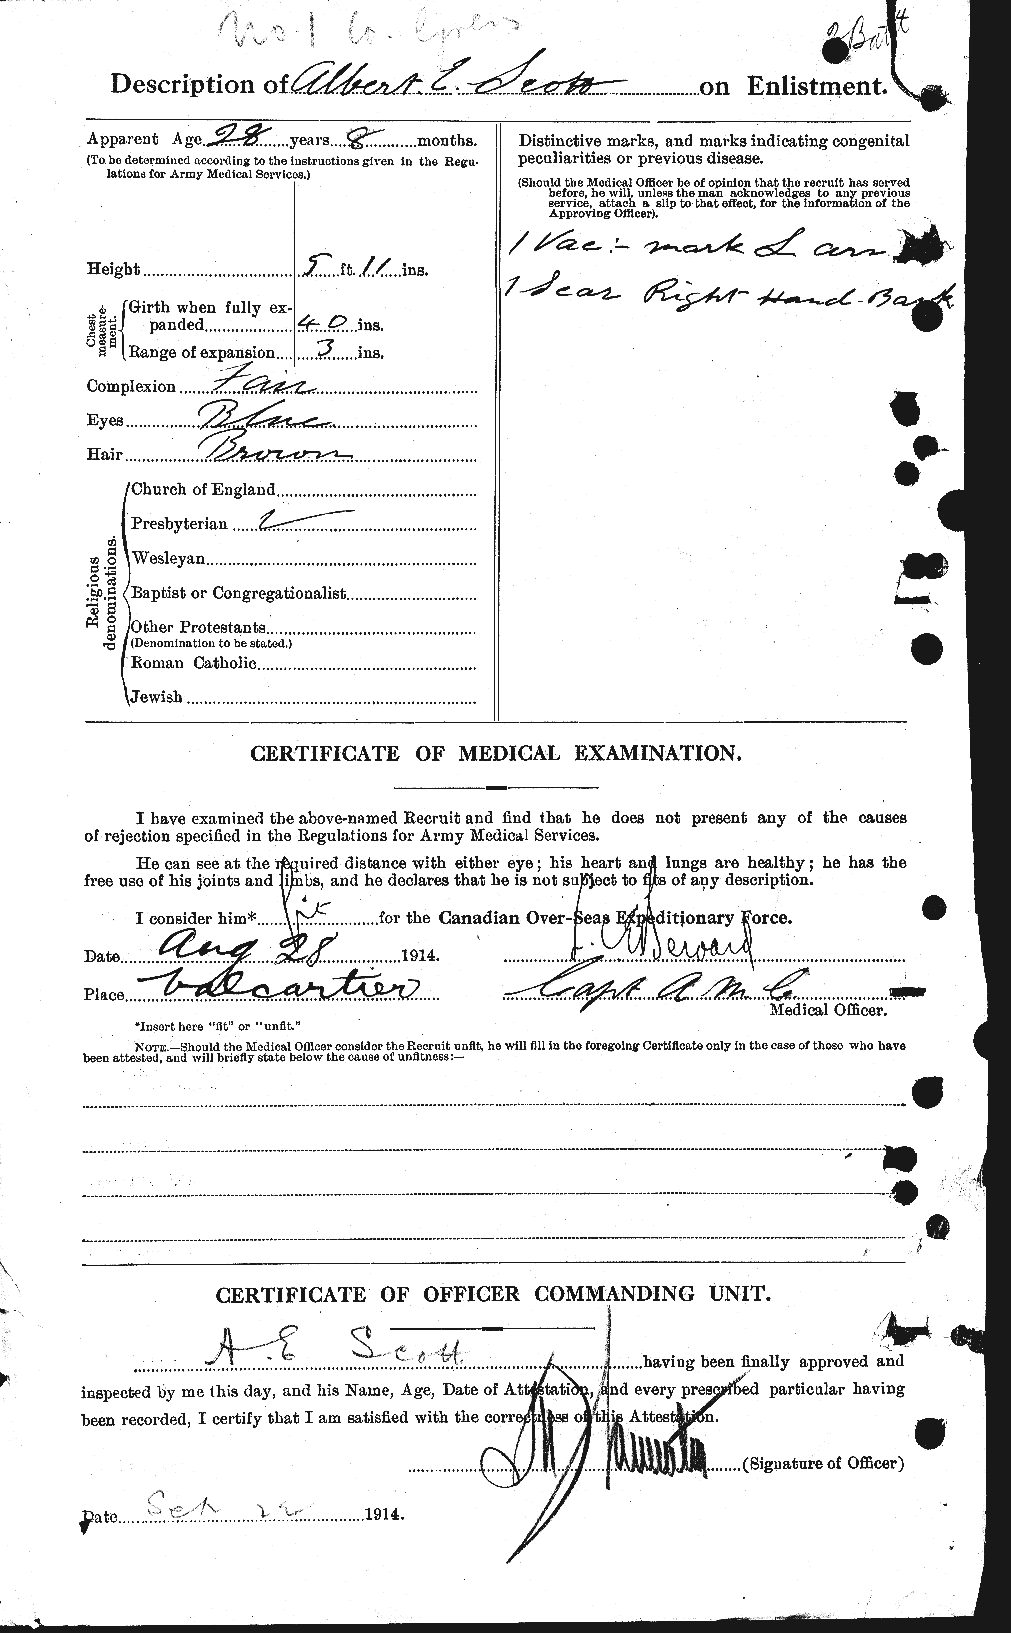 Dossiers du Personnel de la Première Guerre mondiale - CEC 079275b